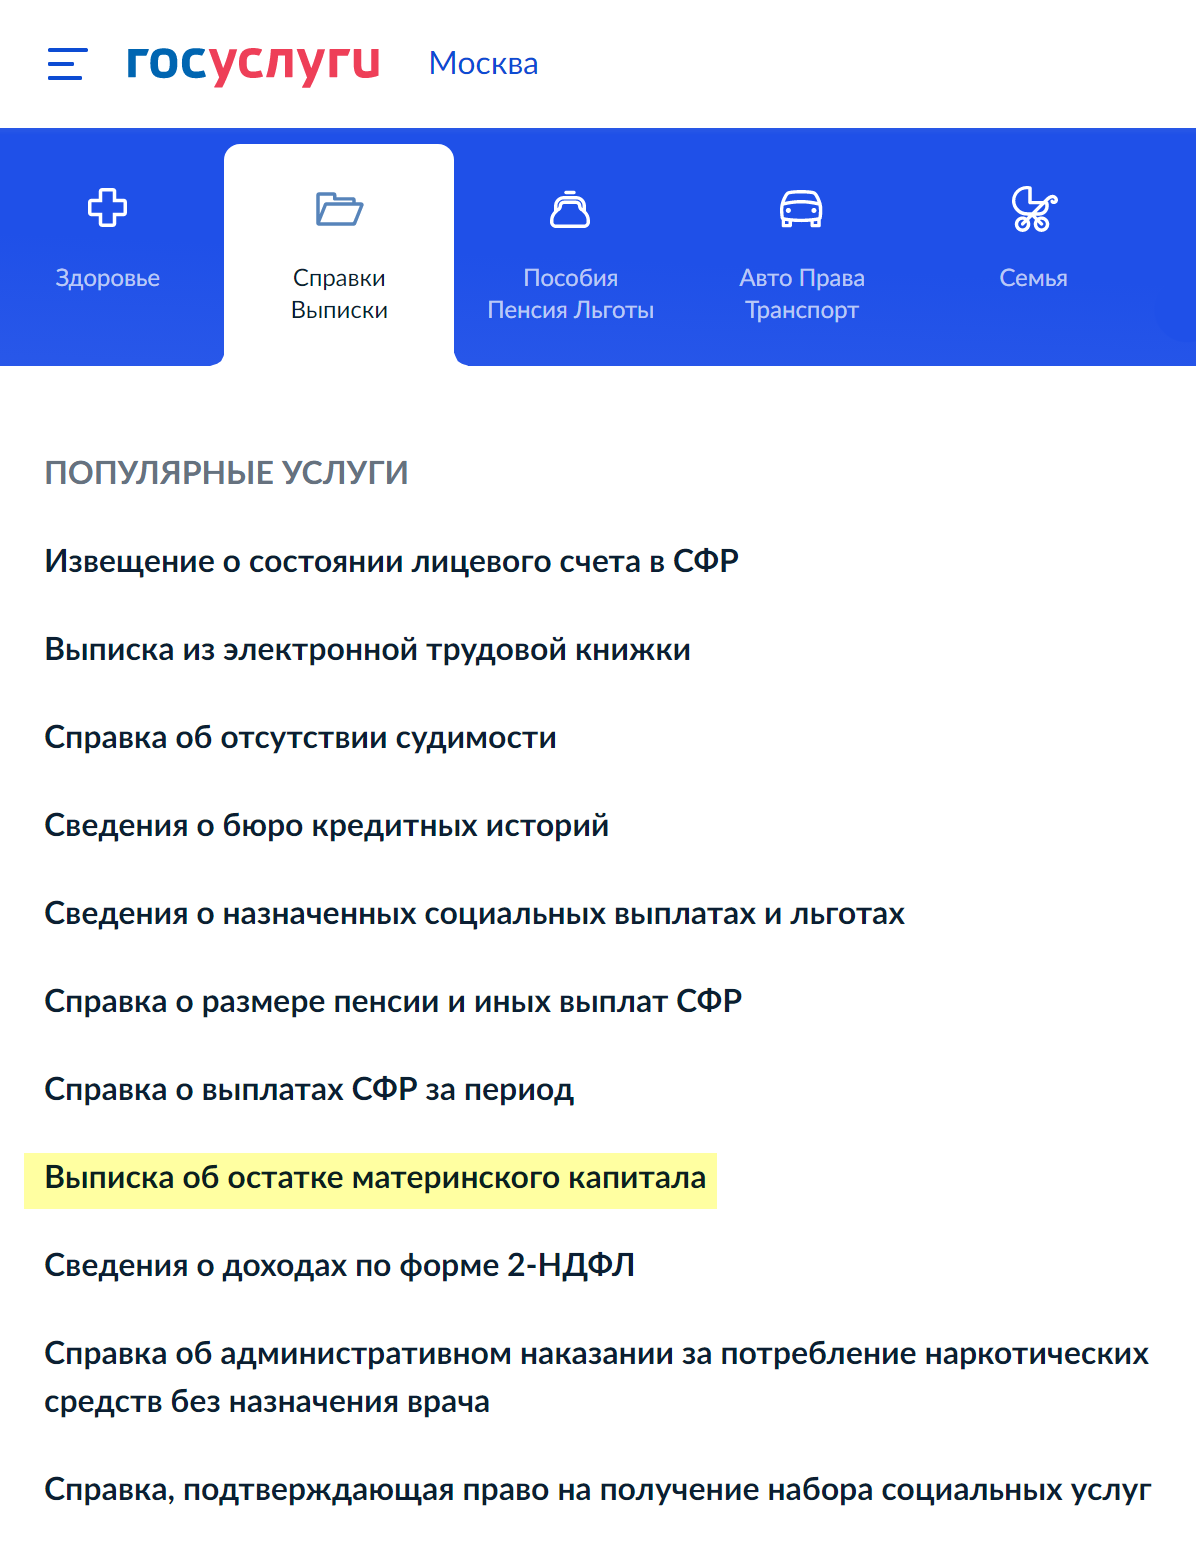 Оформить выписку об остатке материнского капитала можно на госуслугах. Источник:&nbsp;gosuslugi.ru